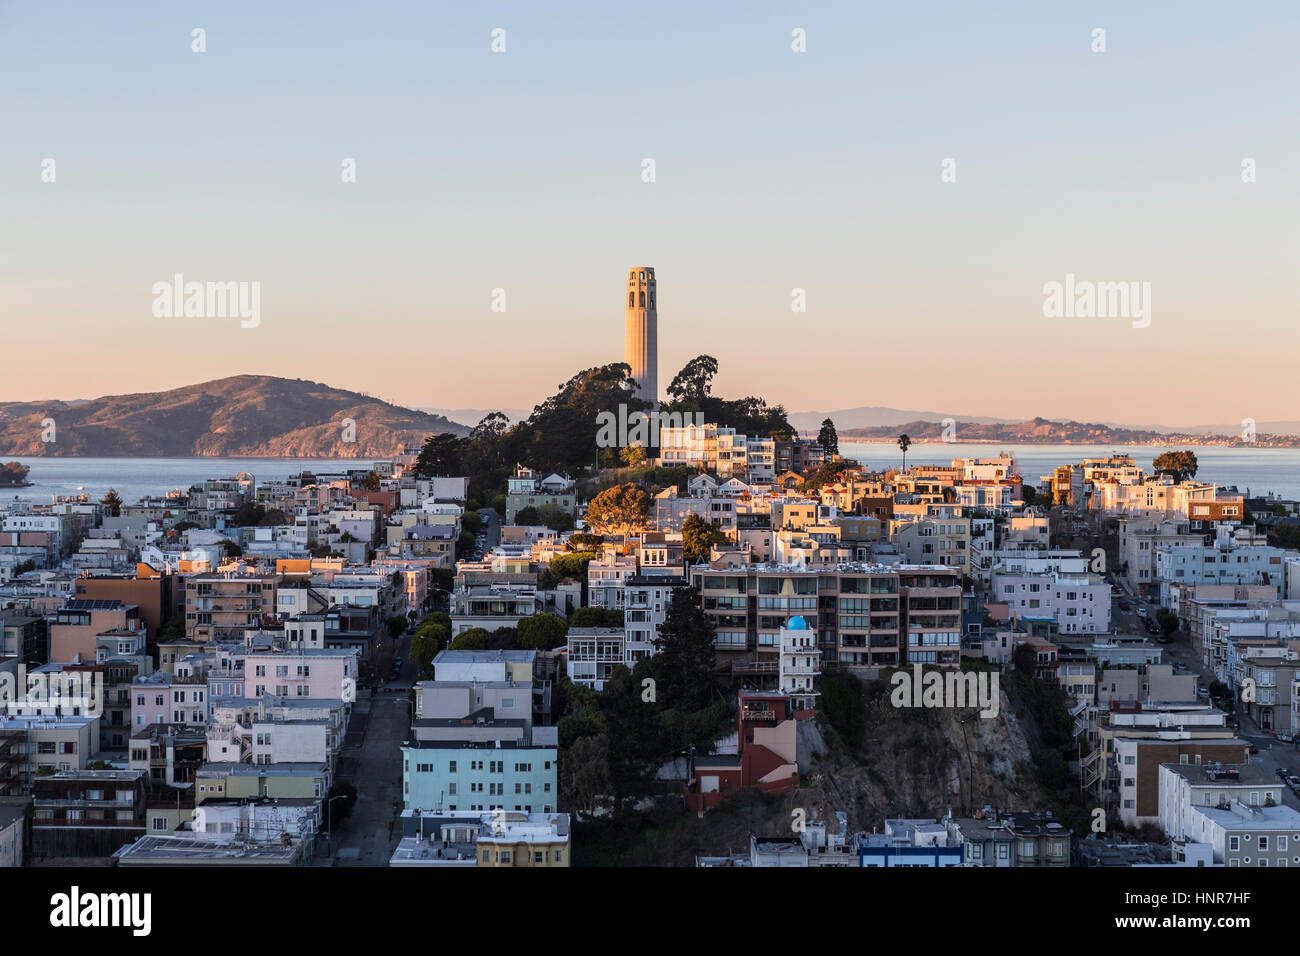 San Francisco, Kalifornien, USA - 13. Januar 2013: Spät am Nachmittag auf Coit Tower und Fernschreiber-Hügel nahe der Innenstadt von San Francisco. Stockfoto